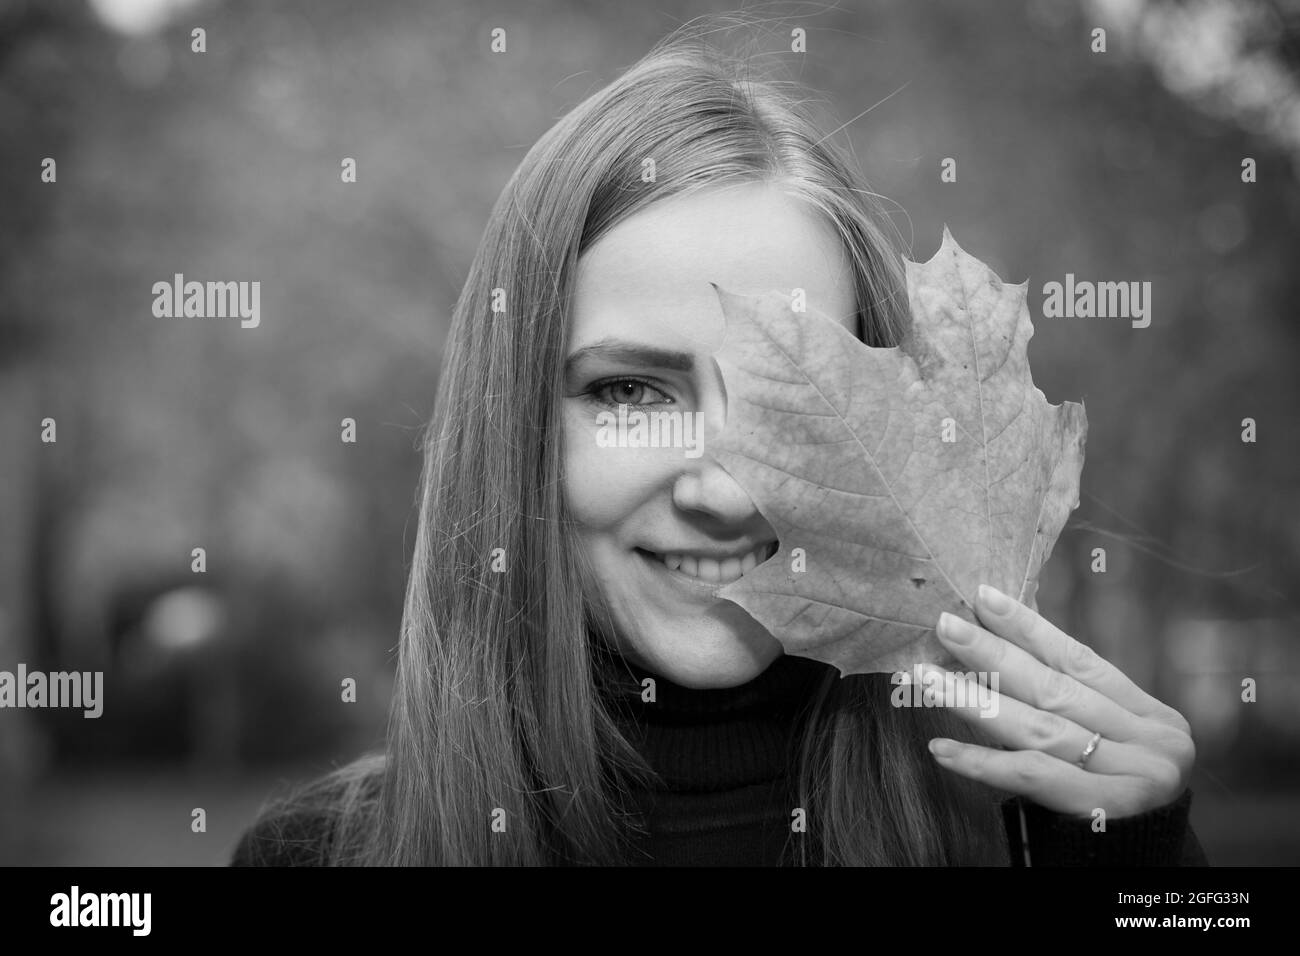 Schöne junge Frau auf einem Hintergrund von Herbstbäumen. Emotionskonzept. Das Mädchen hält ein Ahornblatt in der Hand und bedeckt ein Auge mit dem Blatt. Stockfoto